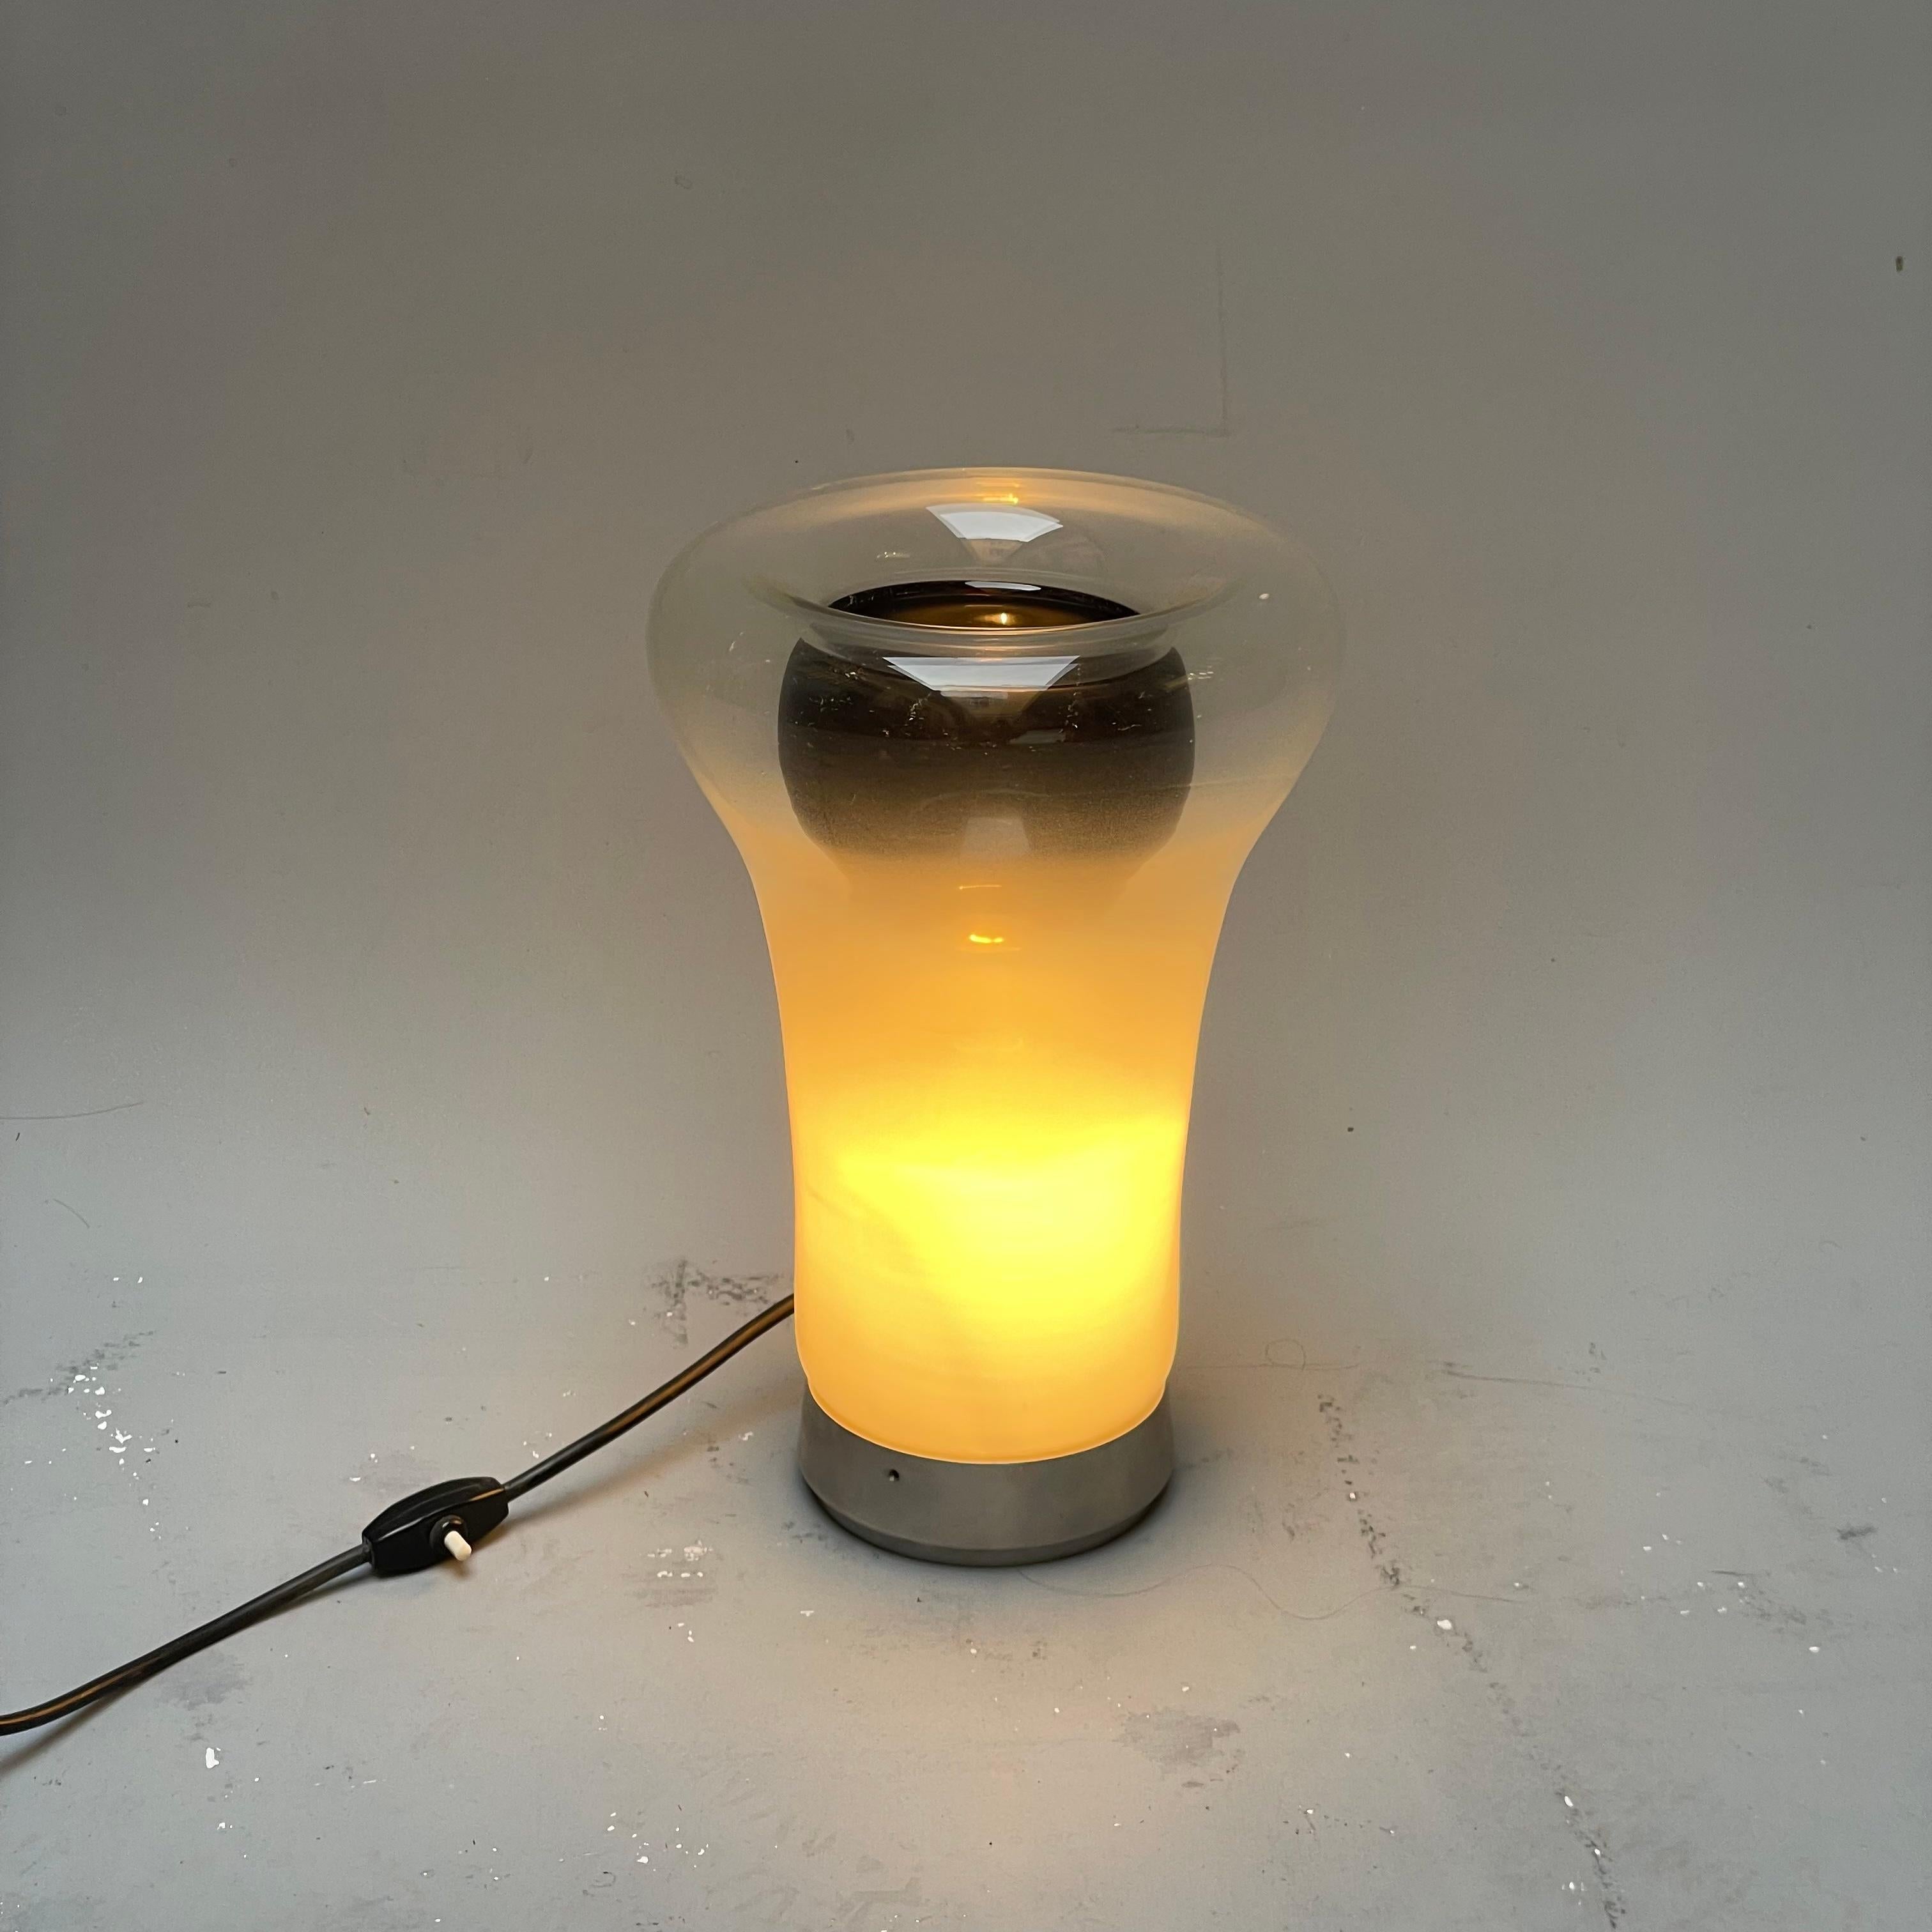 Die von Angelo Mangiarotti entworfene und von Artemide 1967 hergestellte Leuchte besteht aus einem Metallring, der einen Diffusor aus geblasenem Glas trägt. Dank seiner schattierten Oberfläche kann er das Licht der Lichtquelle dimmen. Die Lampe ist